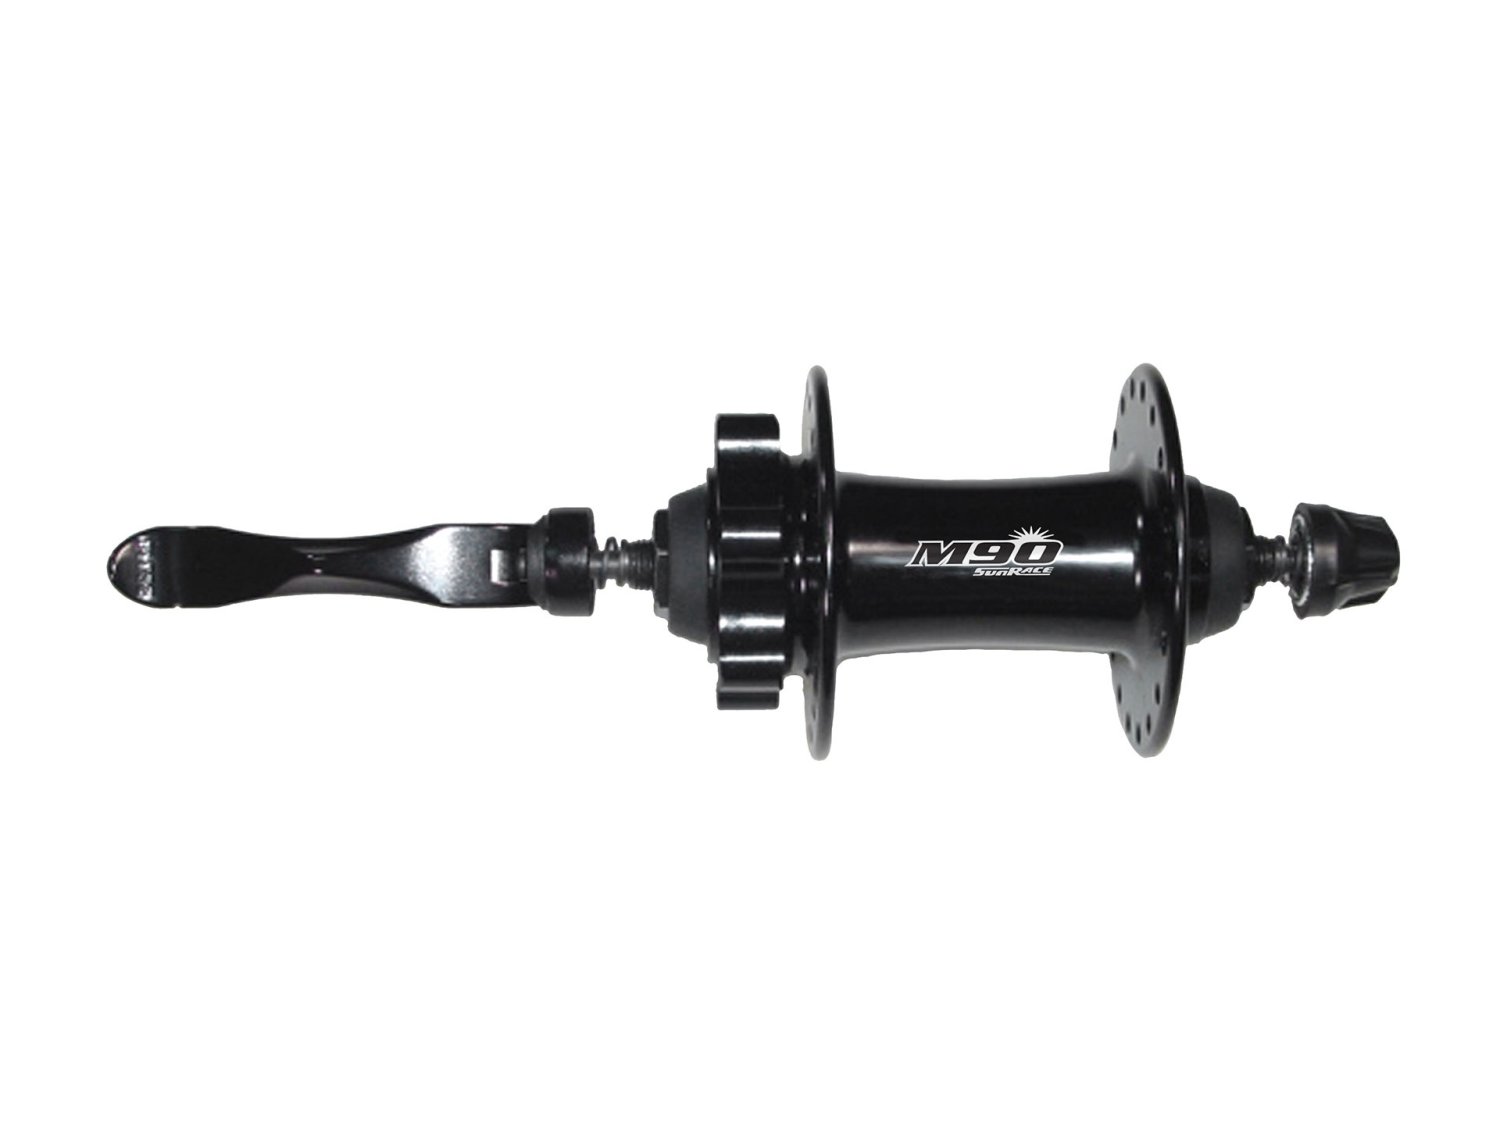 Втулки для велосипеда Втулка велосипедная SUNRACE HBM96.F0QS.DS1.BX M96, передняя, с эксцентриком, 32H, под диск, чёрный, 06-201509